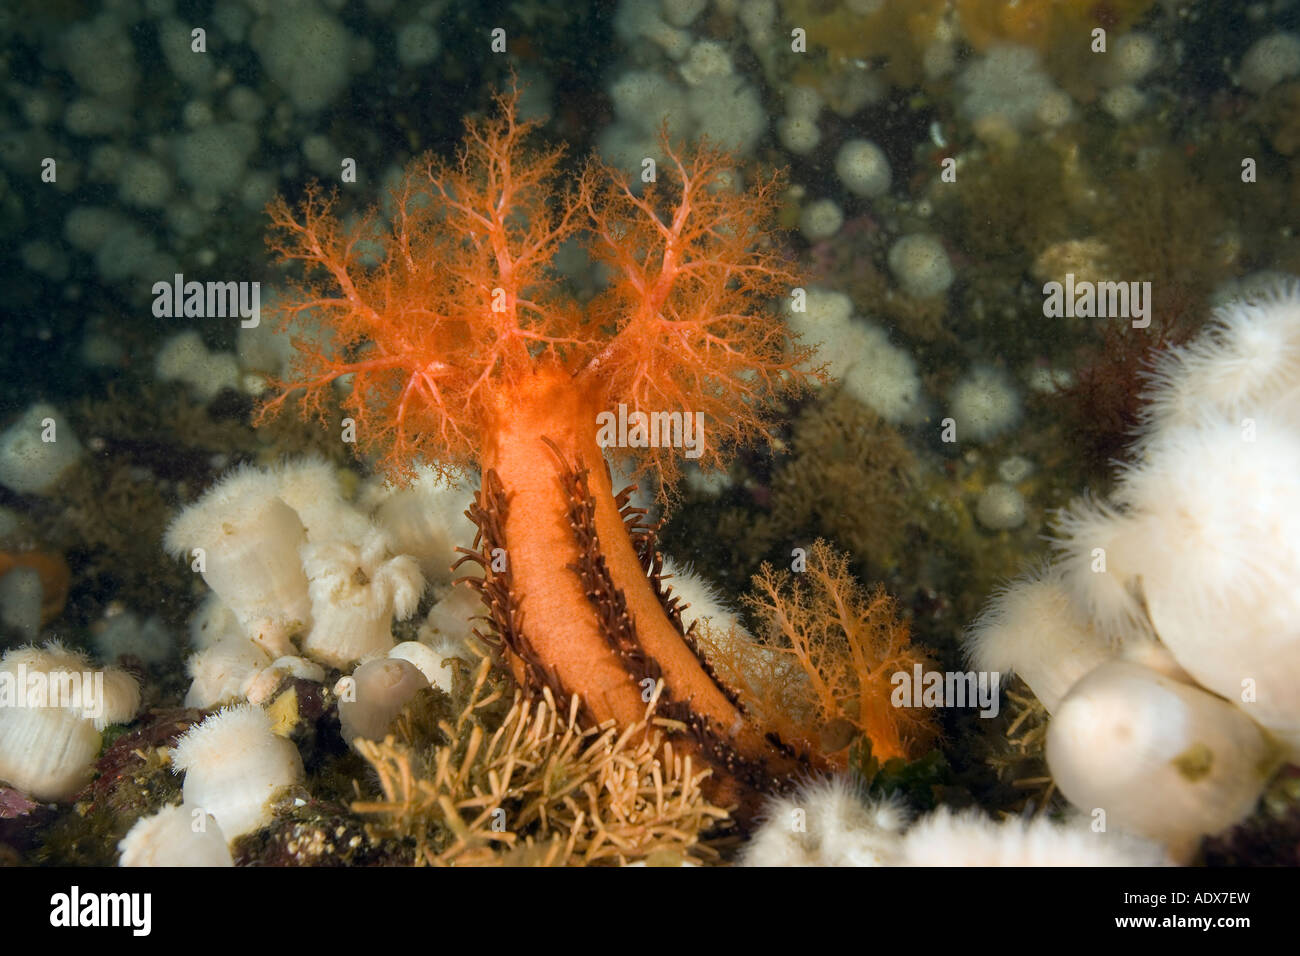 orange sea cucumber Cucumaria miniata British Columbia Pacific Ocean Canada Stock Photo